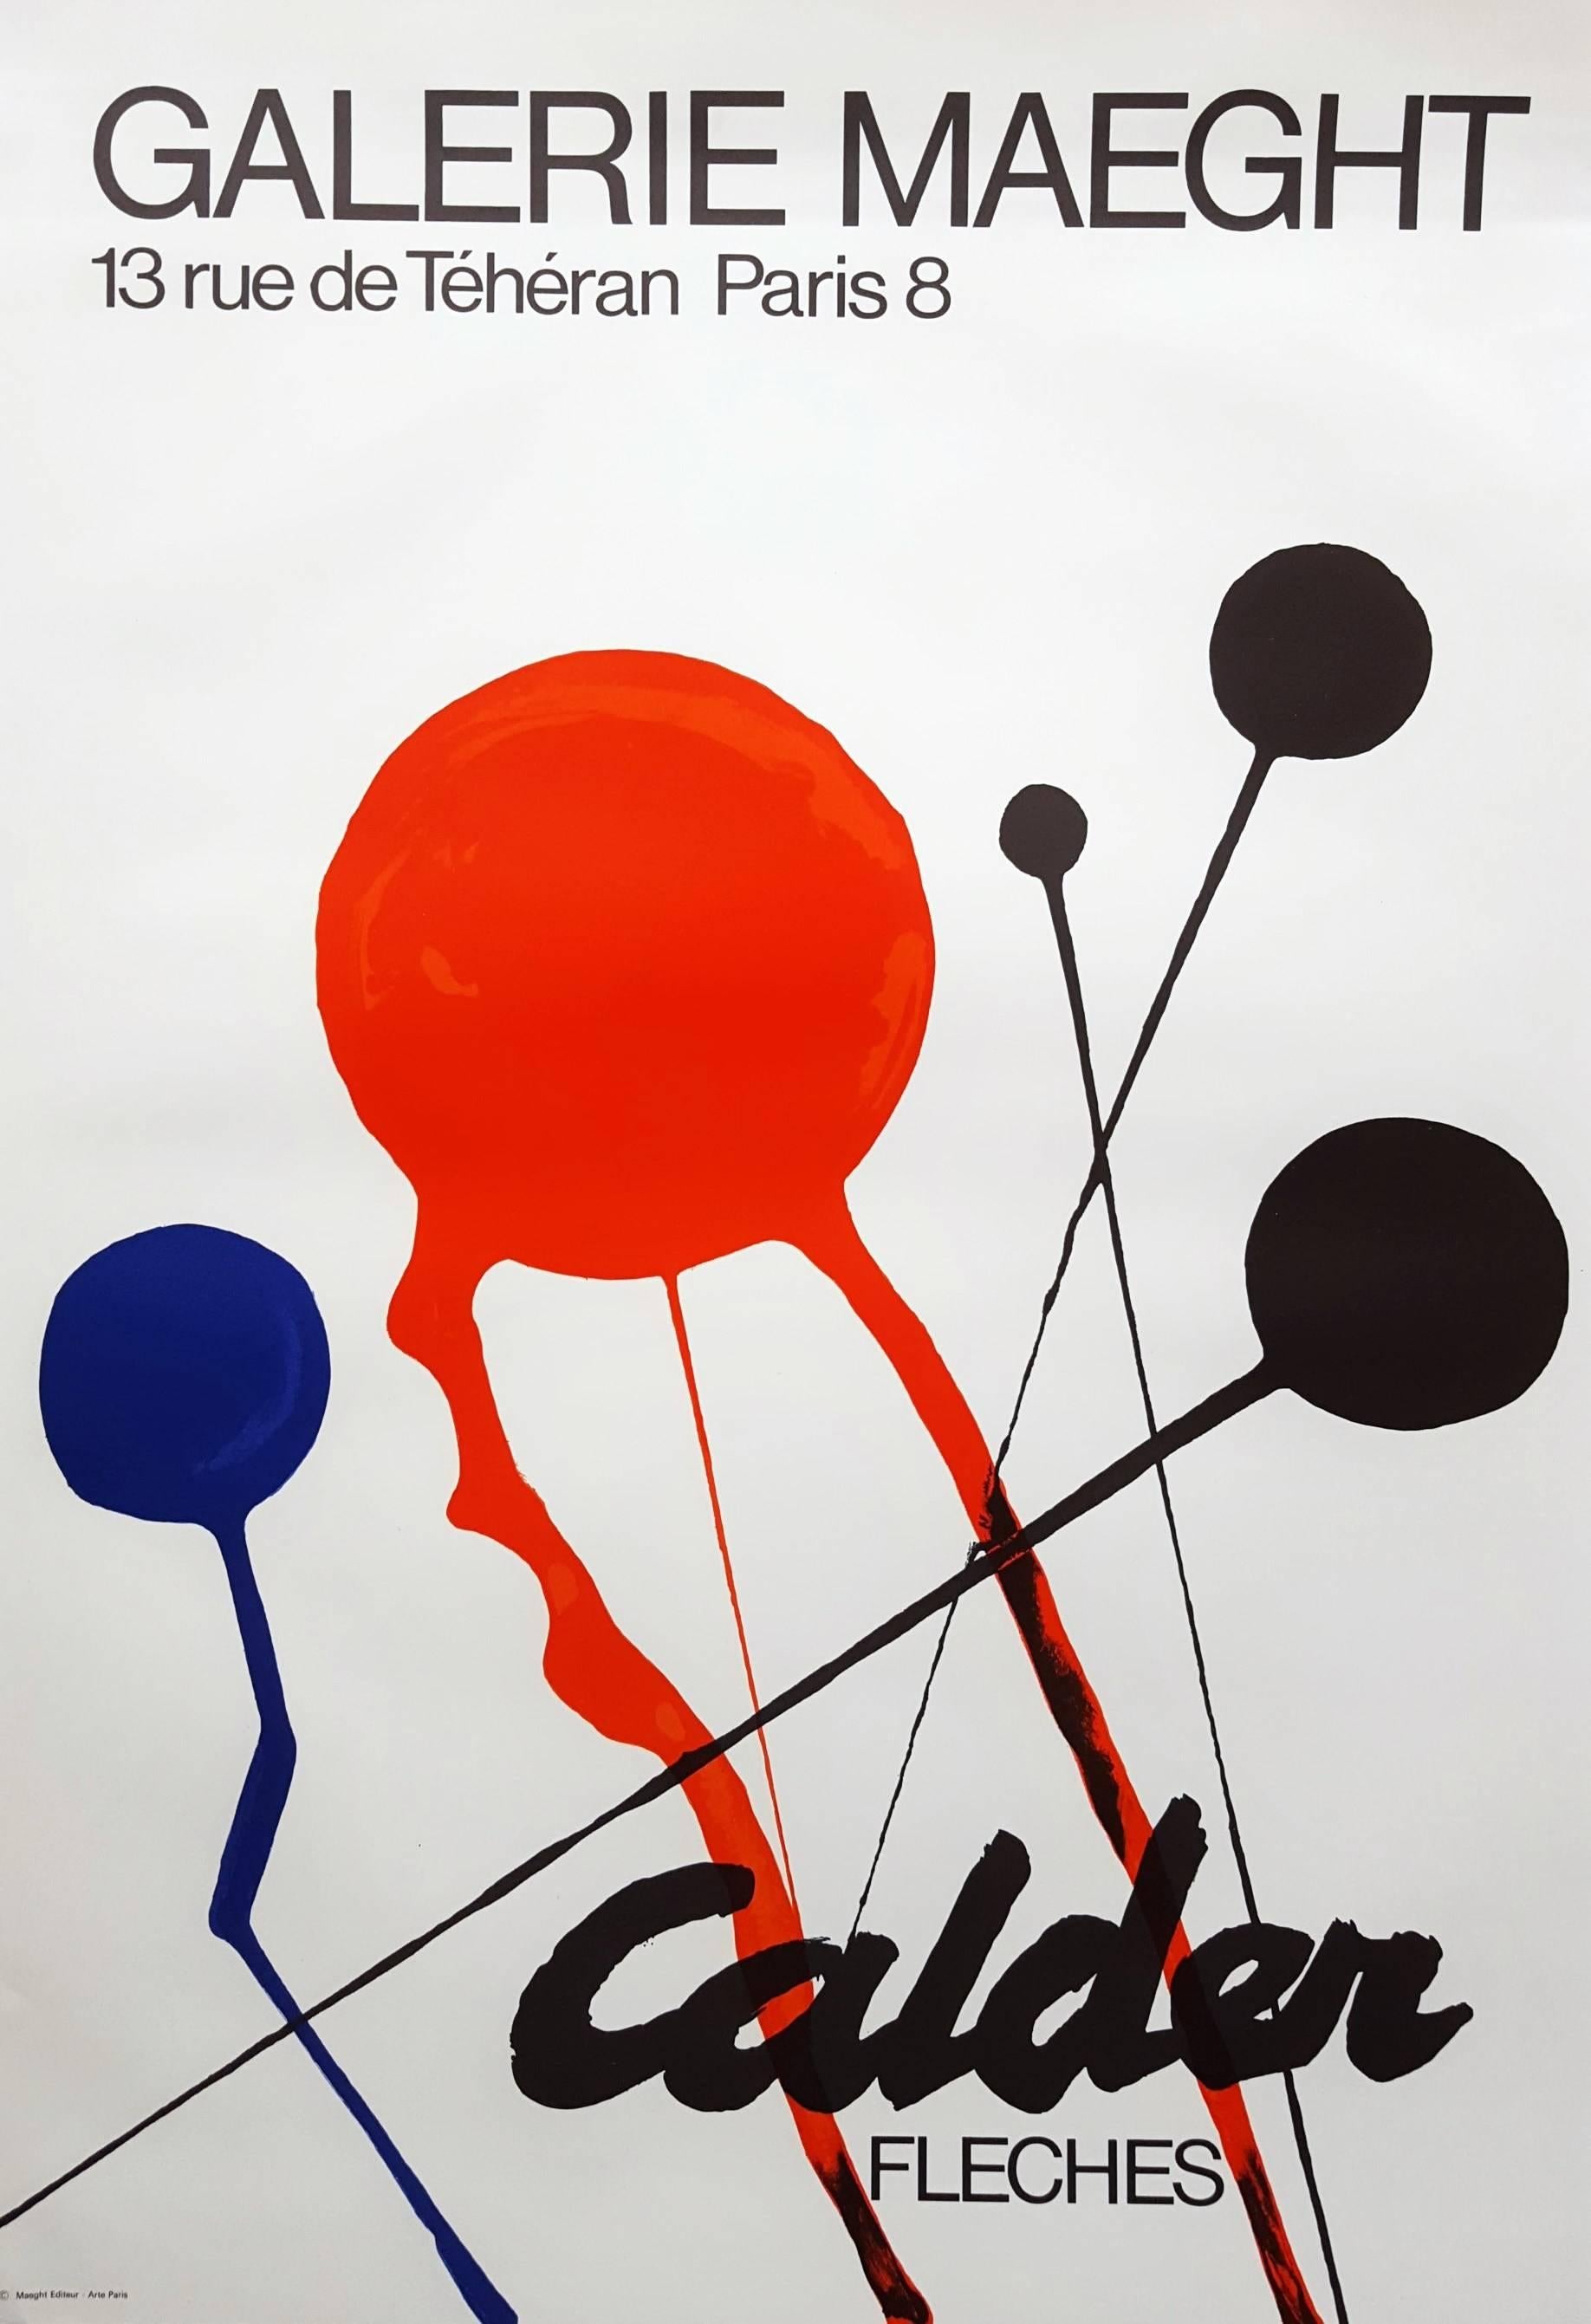 (after) Alexander Calder Abstract Print - Fleches